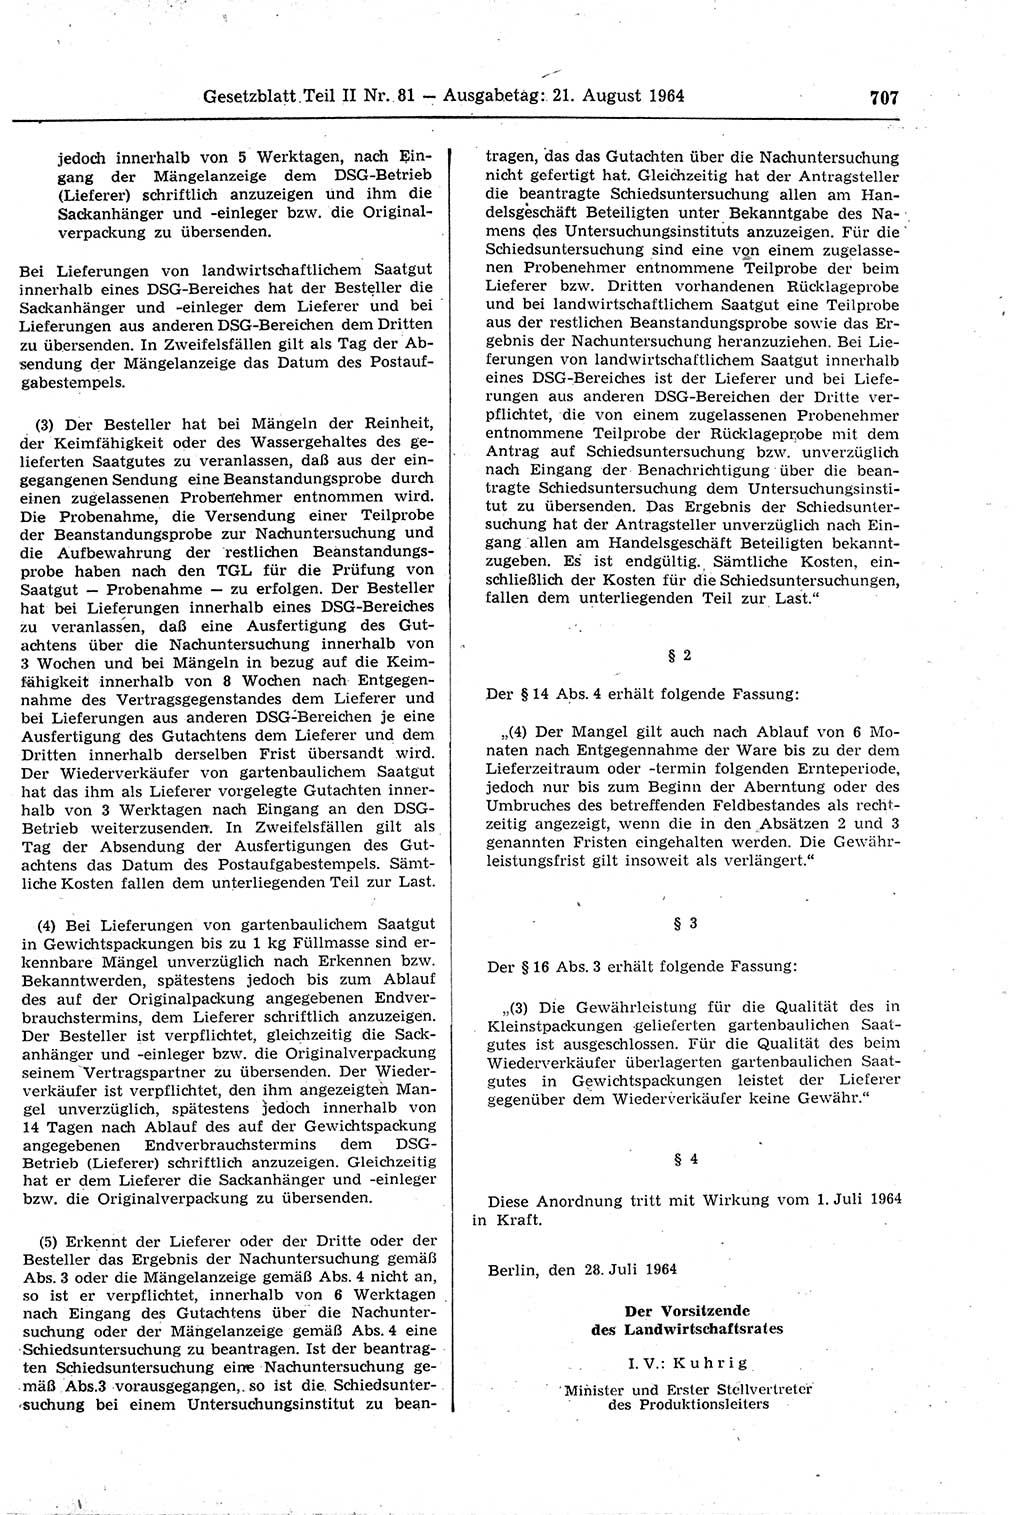 Gesetzblatt (GBl.) der Deutschen Demokratischen Republik (DDR) Teil ⅠⅠ 1964, Seite 707 (GBl. DDR ⅠⅠ 1964, S. 707)